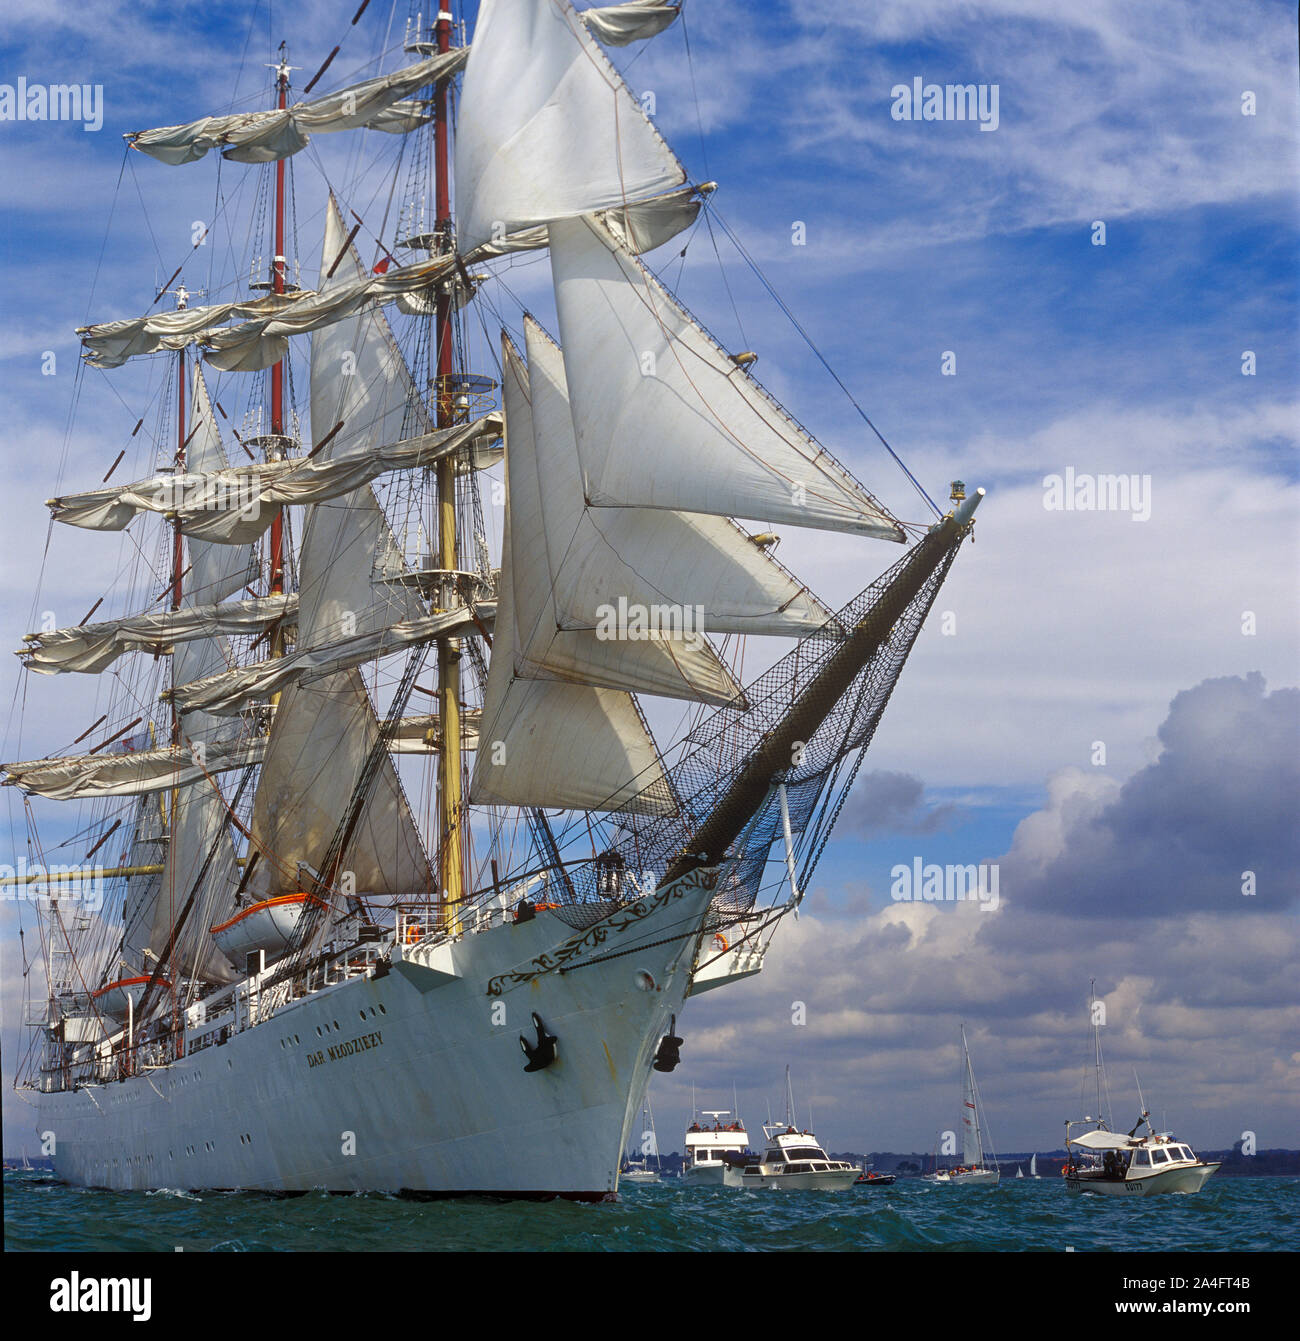 Dar Mlodziezy navire formation voile navigation dans le Solent, Hampshire, England, UK Banque D'Images